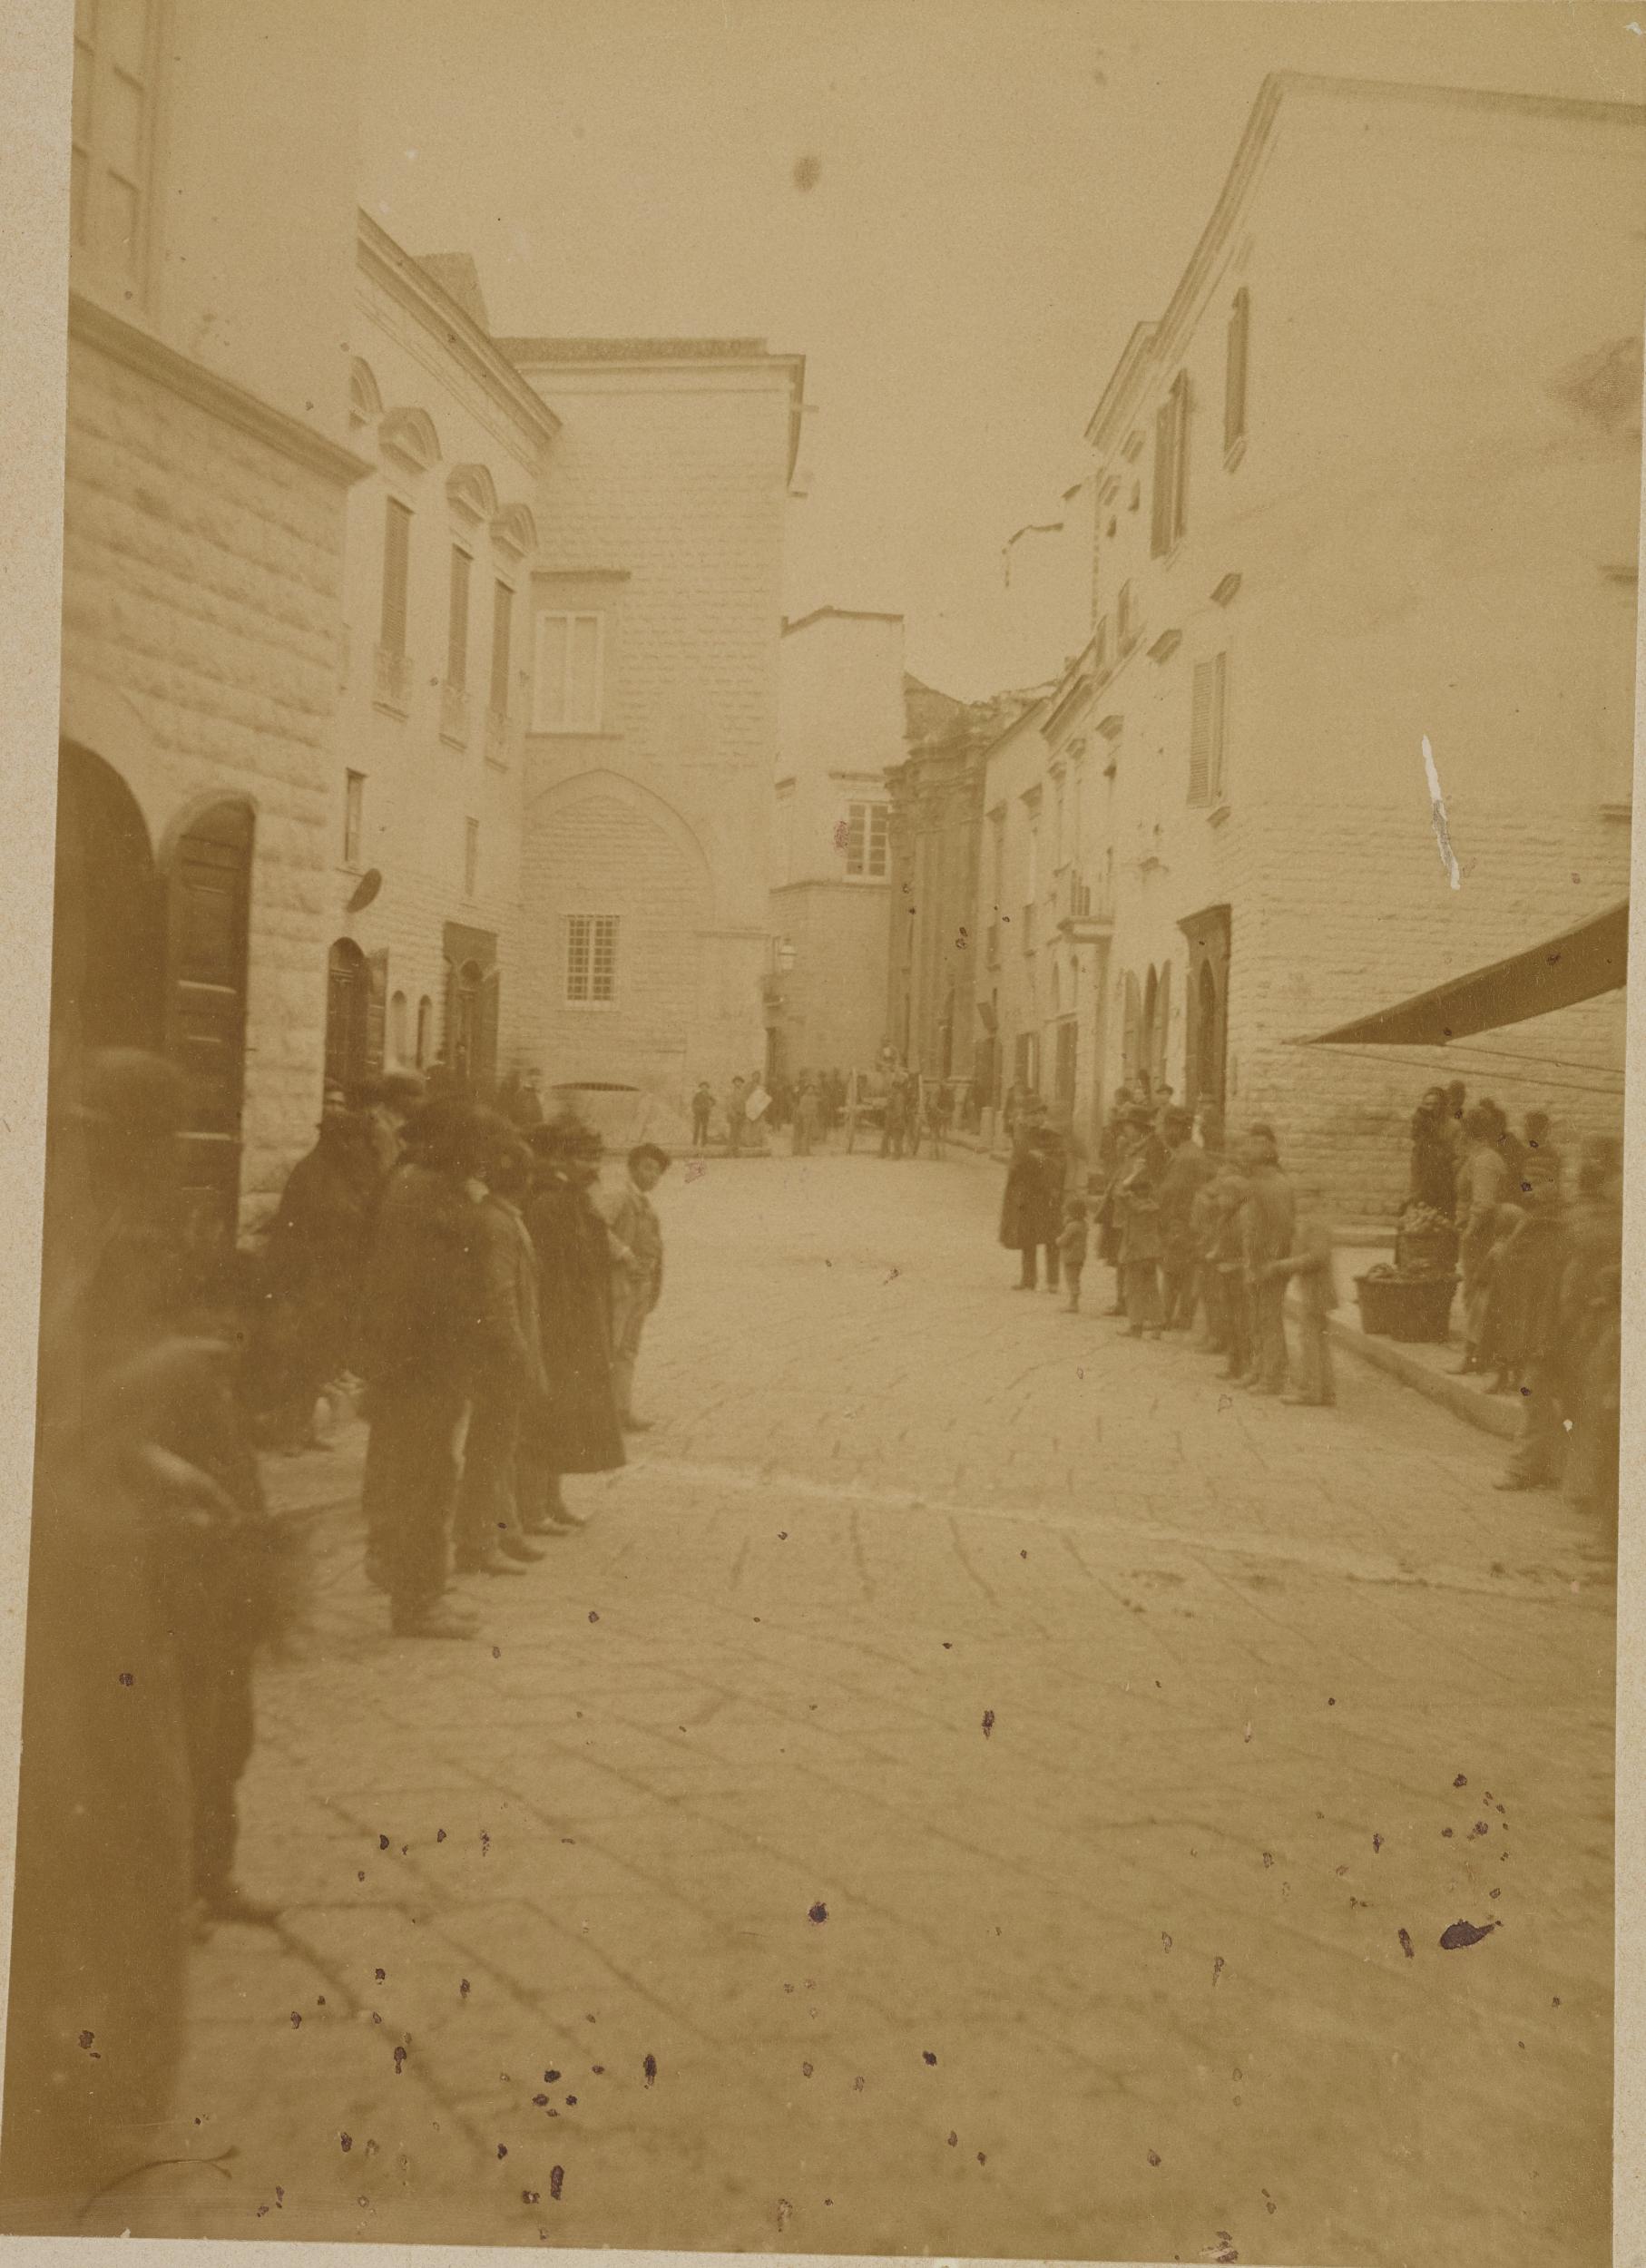 Fotografo non identificato, Barletta - Palazzo Bonelli, 1880 ca., albumina/carta, 16,2x23,2 cm, MPI312825